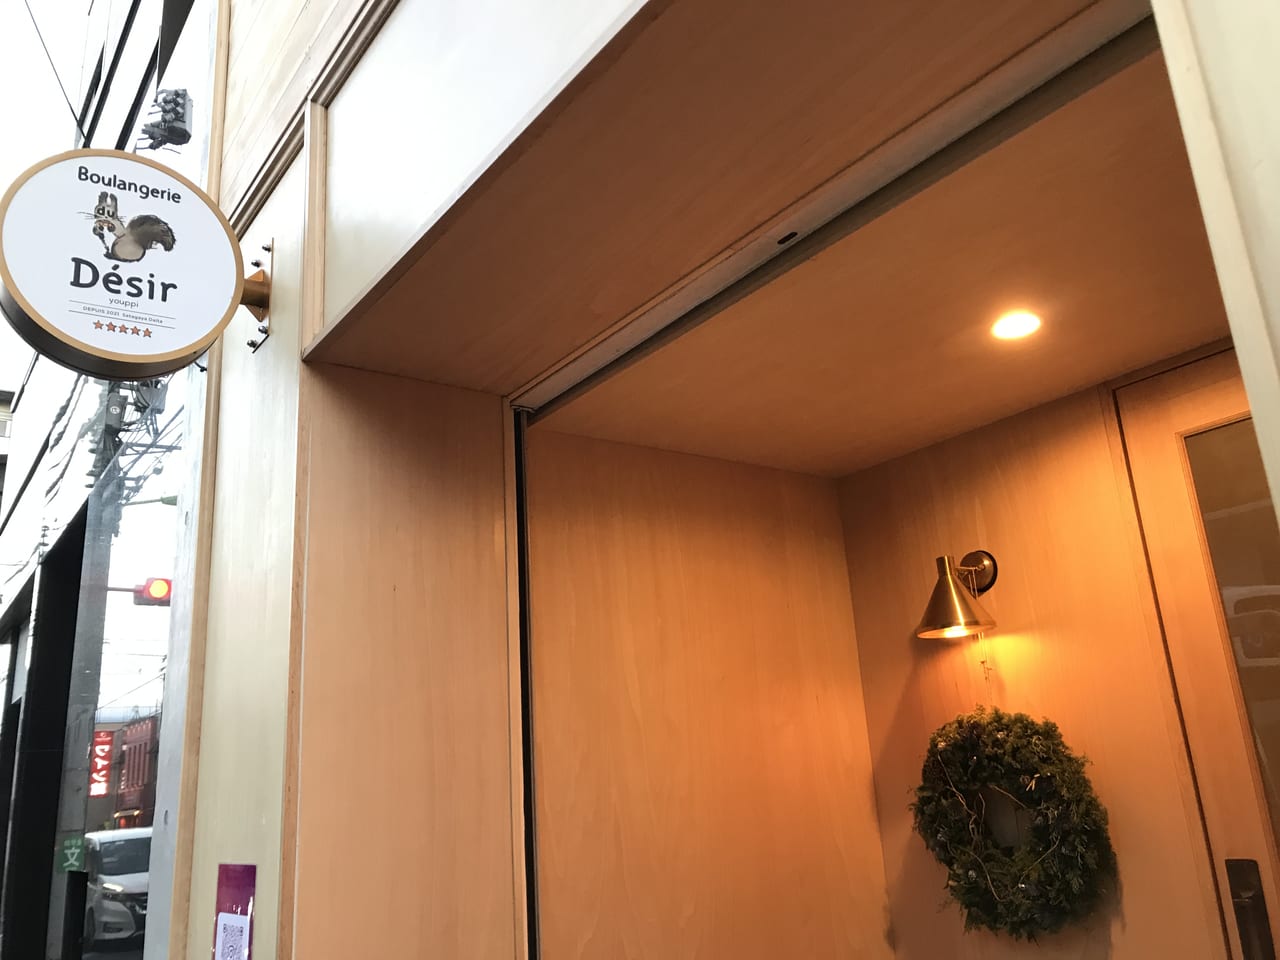 世田谷区代田に素材にこだわった函館出身のオーナーさんのブーランジェリー ドゥ デジールが2021年12月17日オープンしました。